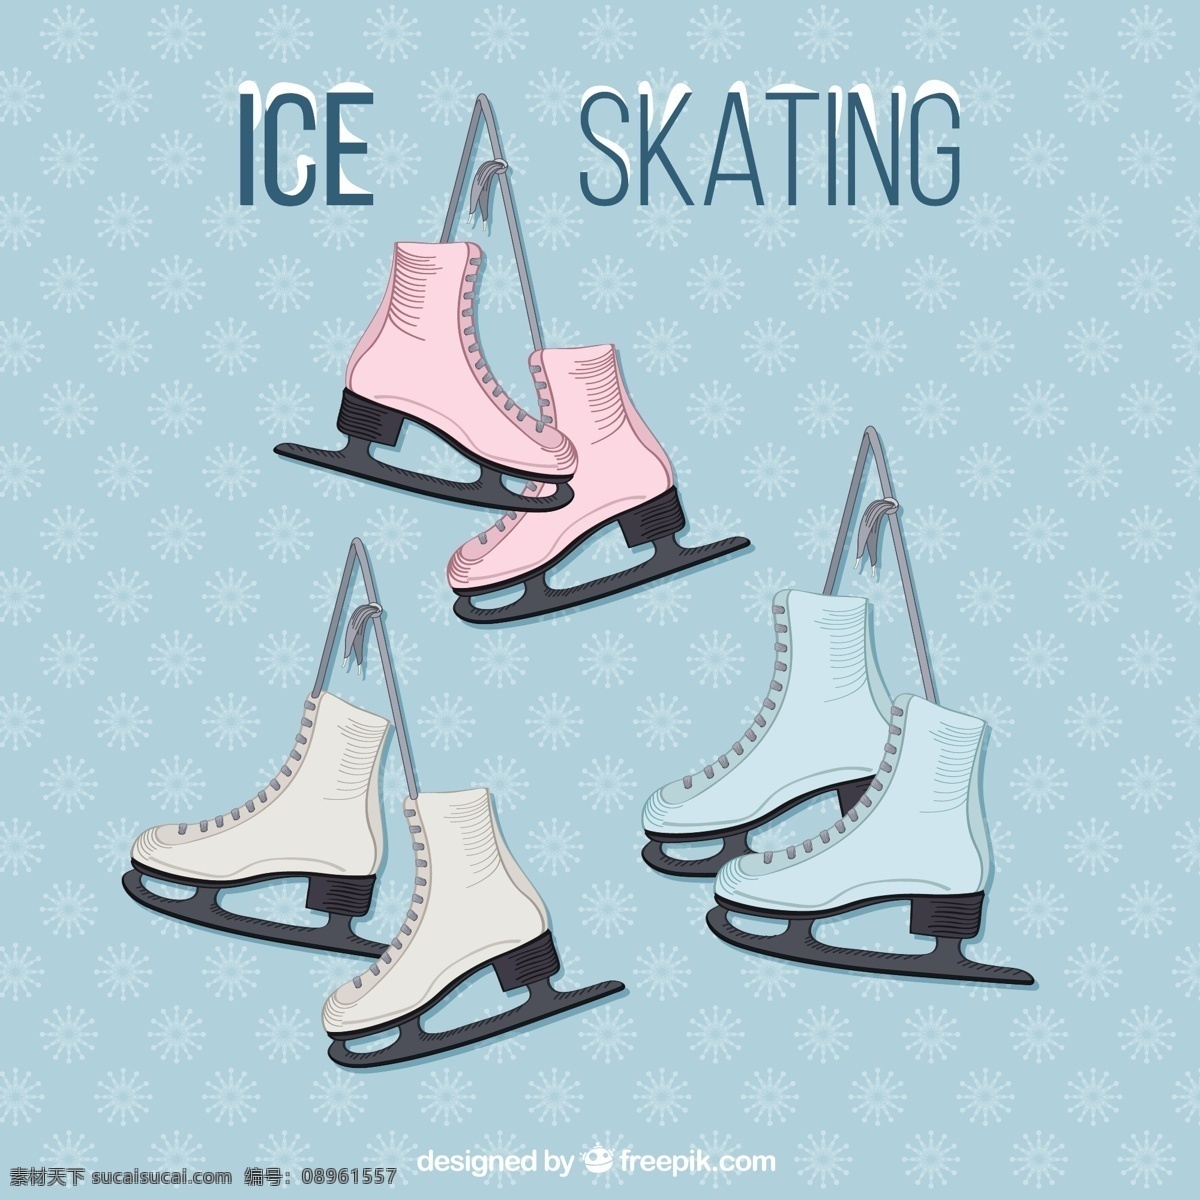 滑冰集 图标 运动 雪 冬 平 冰 平面设计 鞋 插图 白色 平面图标 溜冰 图标集 靴子 图 活动 设置 青色 天蓝色